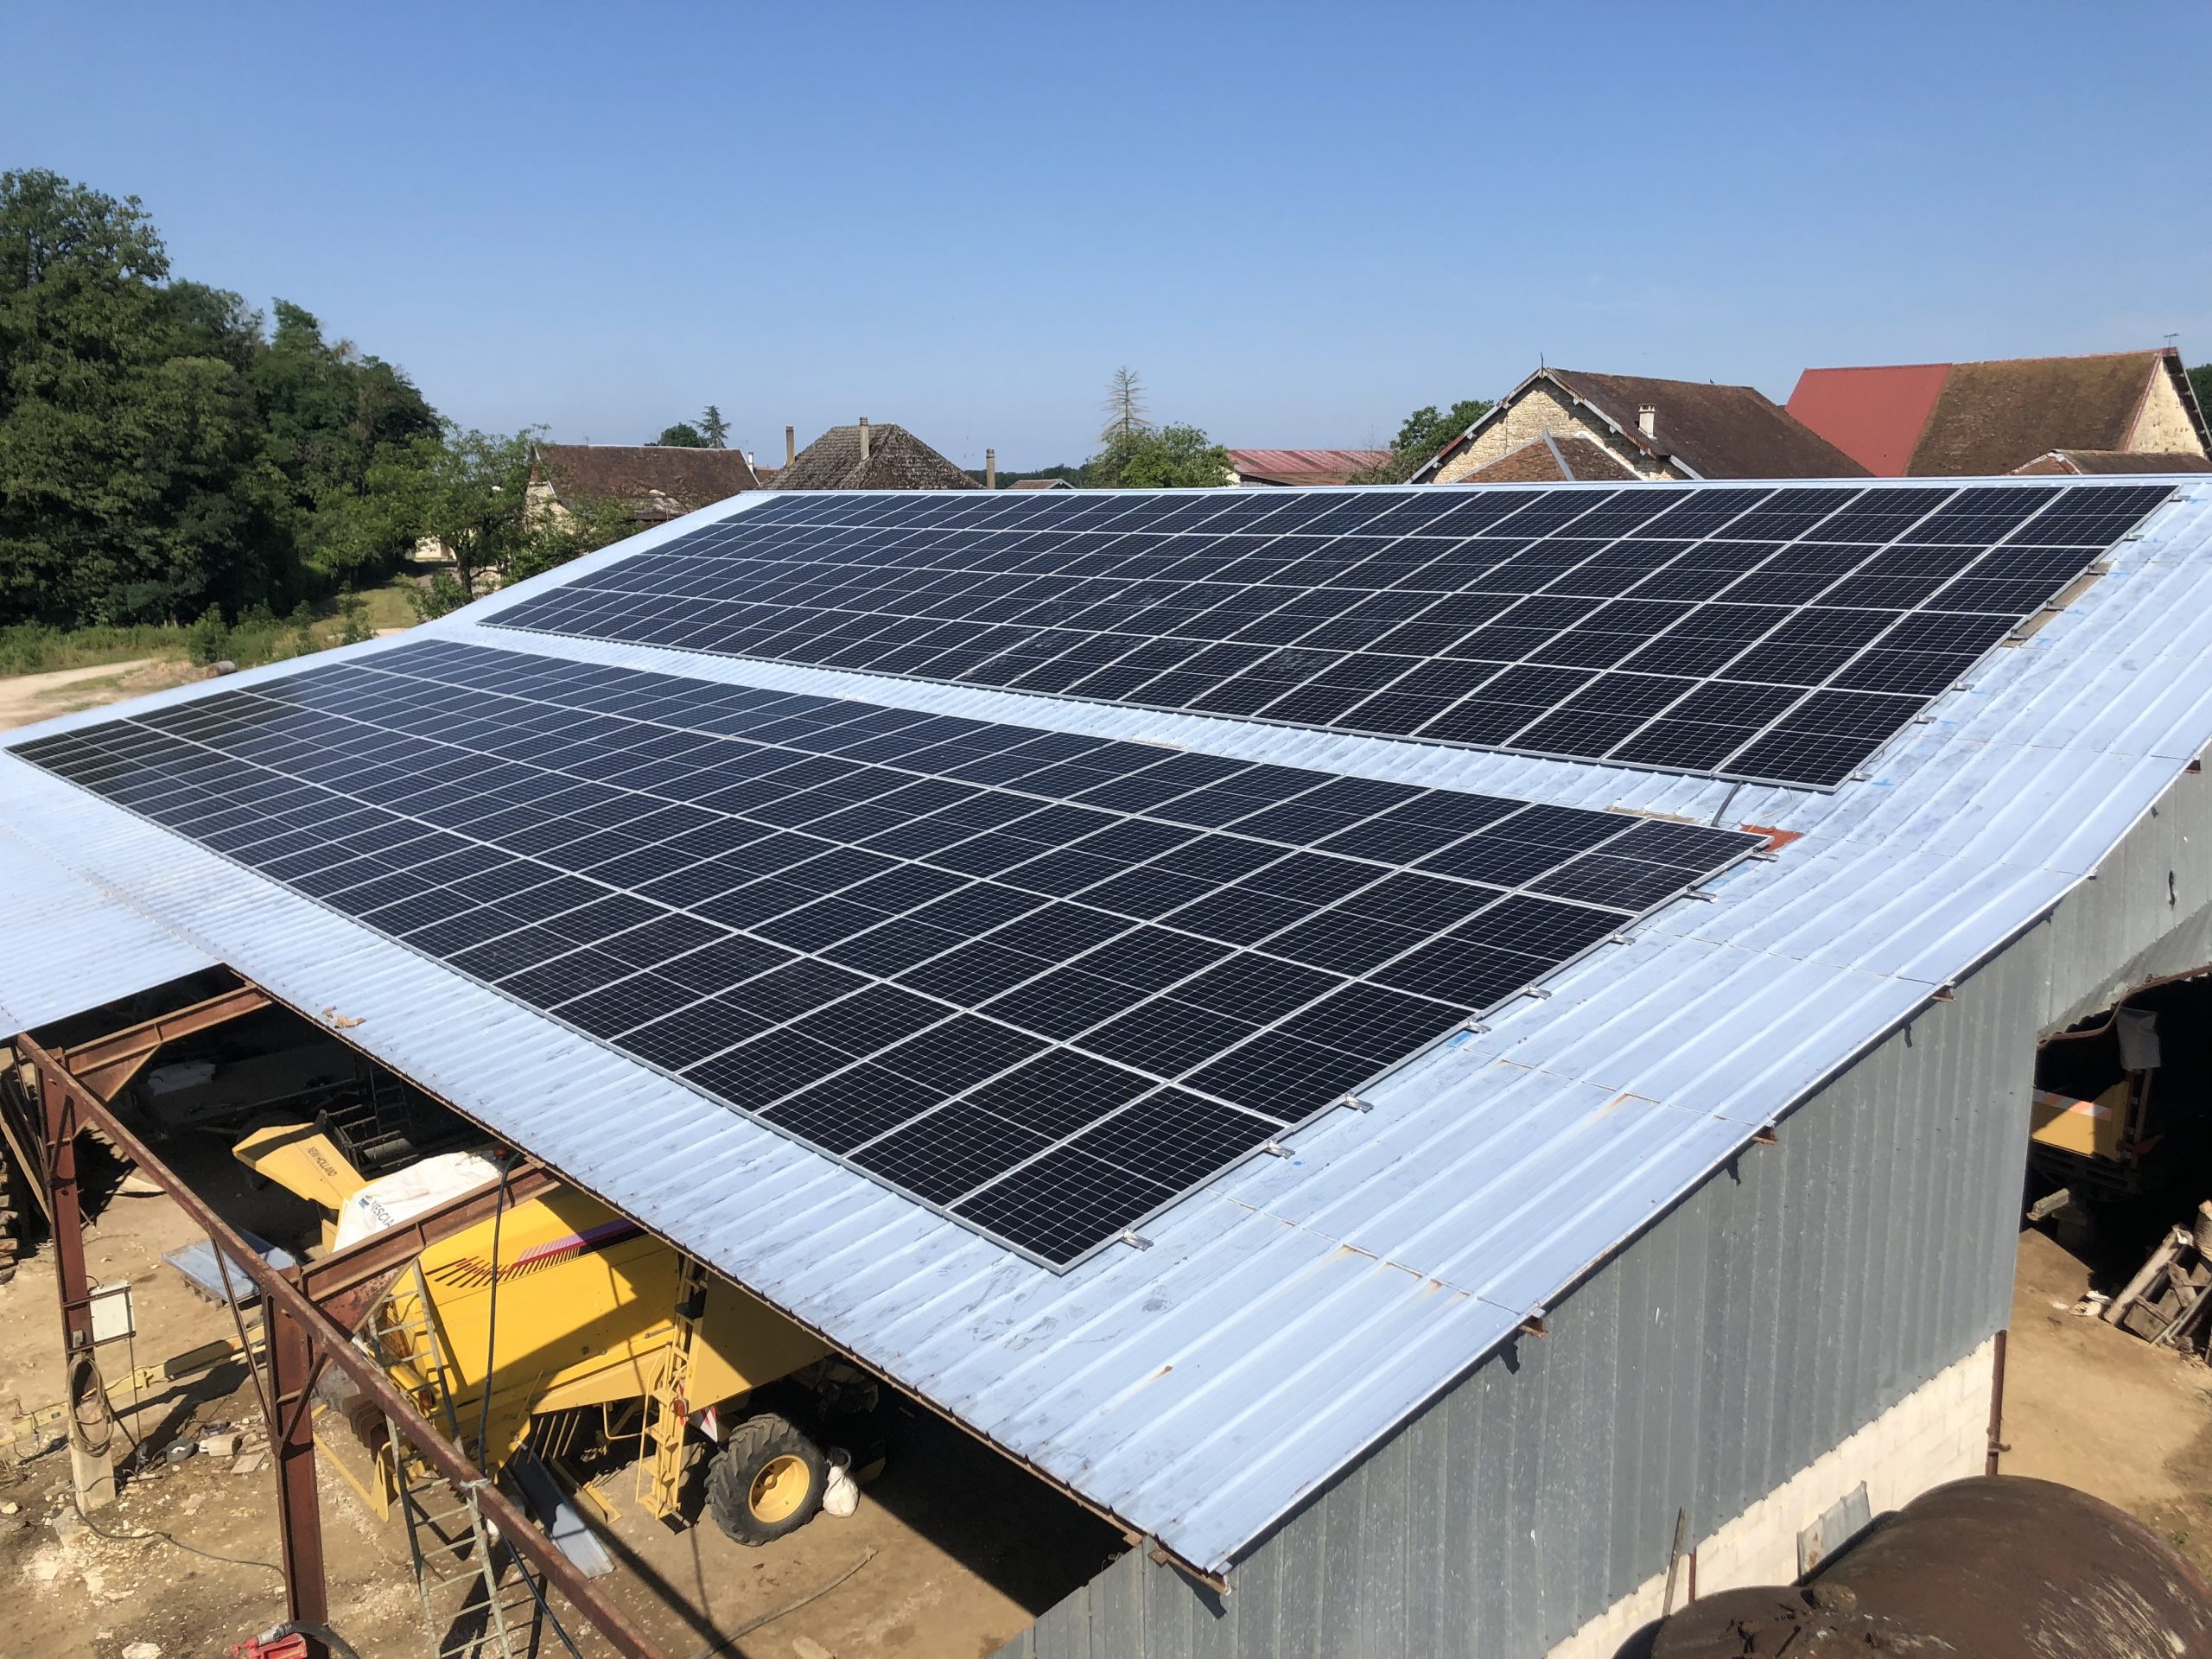 energies services france installation photovoltaique batiment agricole aube revente edf dualsun sma panneaux solaires